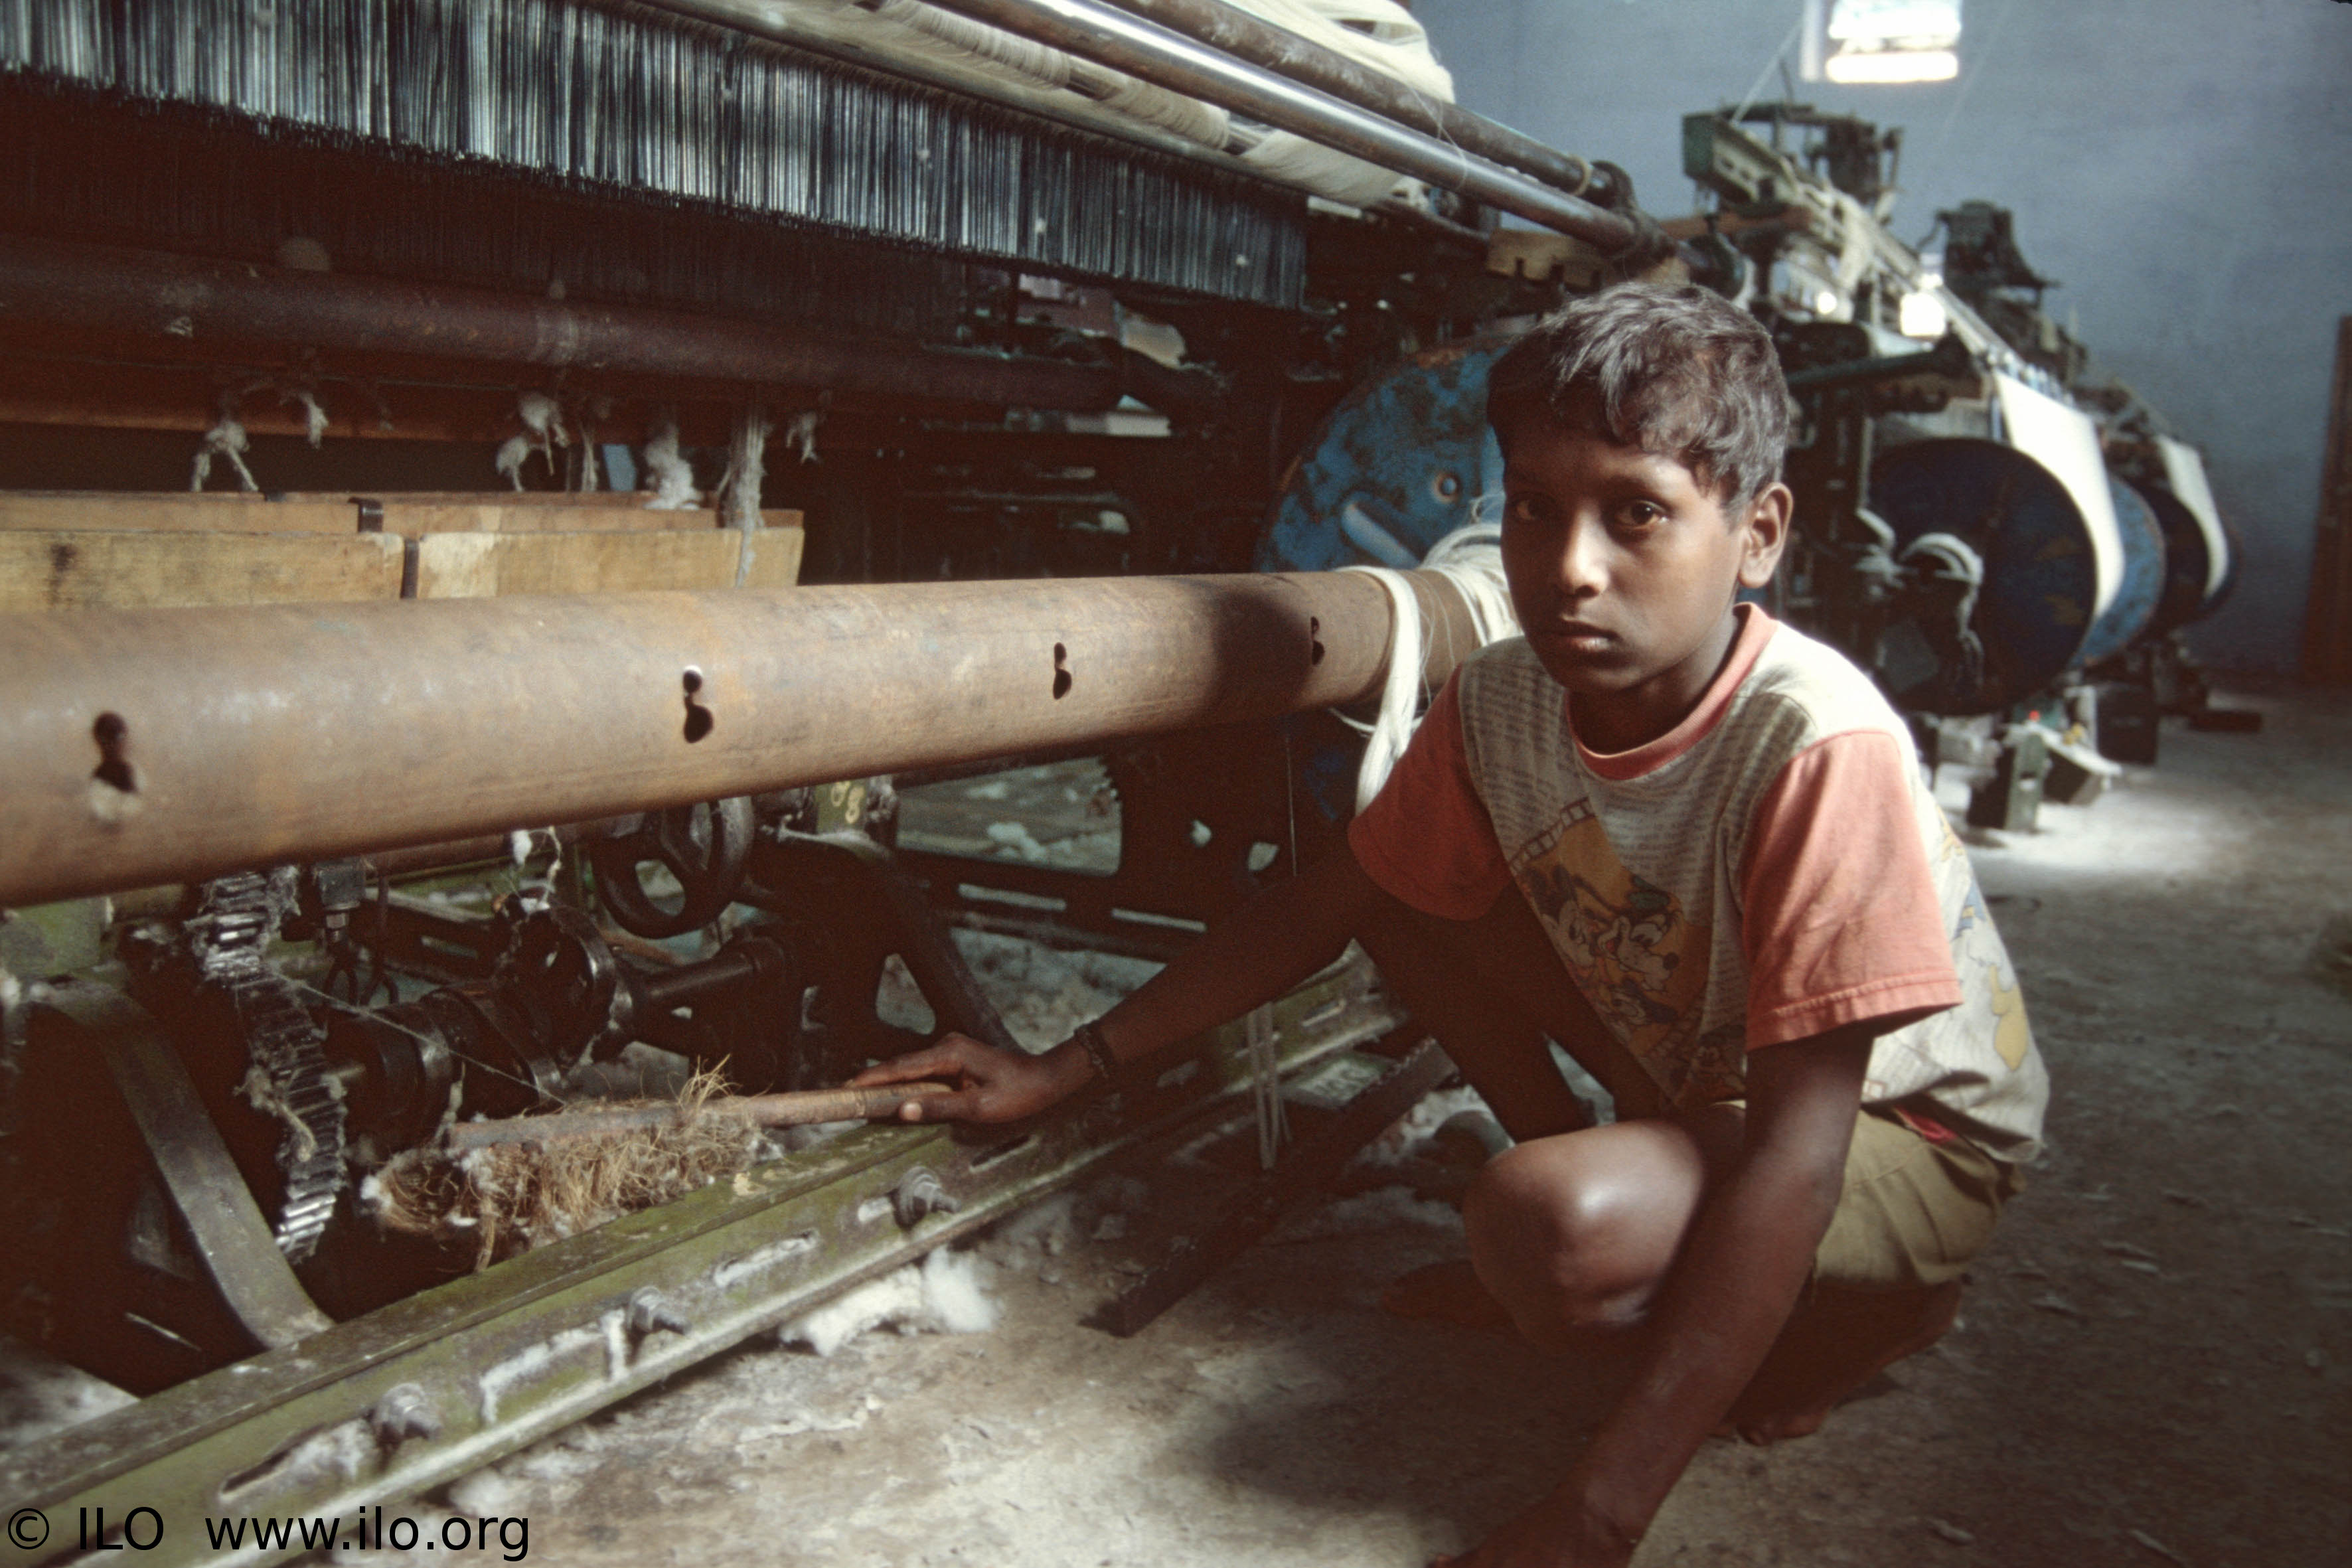 The Phenomenon of Child Labour in Pakistan